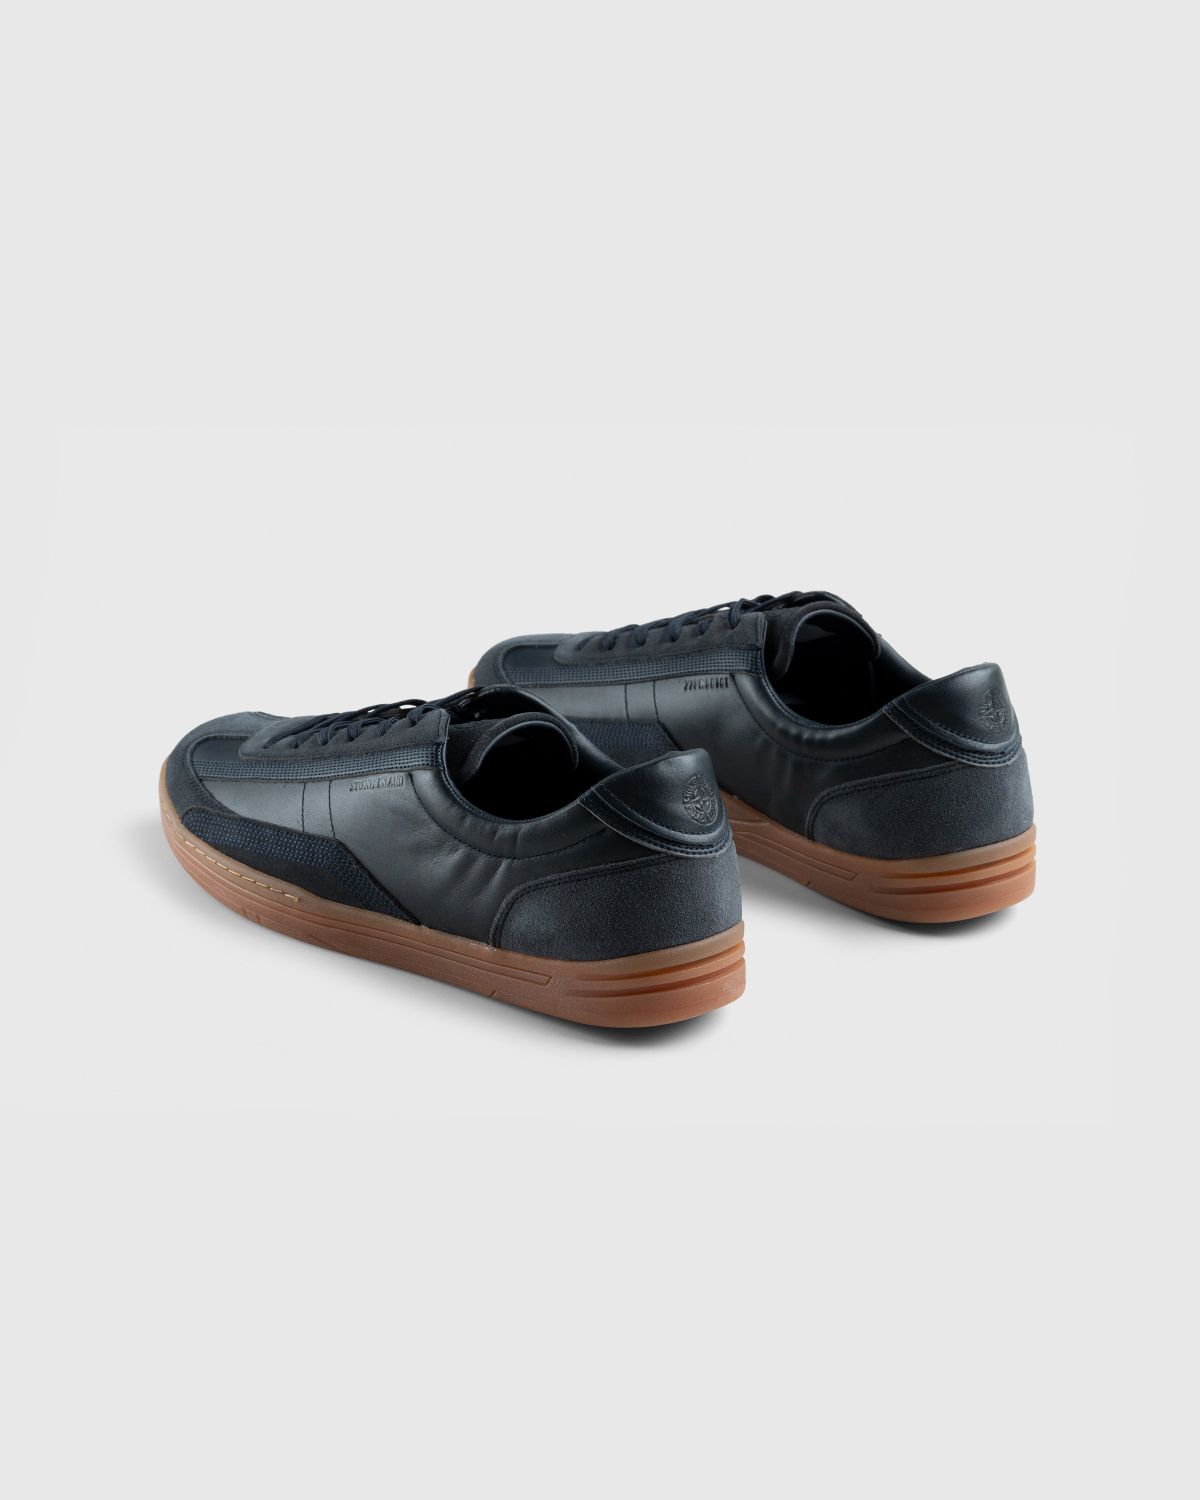 Stone Island – Rock Sneaker Black - Low Top Sneakers - Black - Image 4